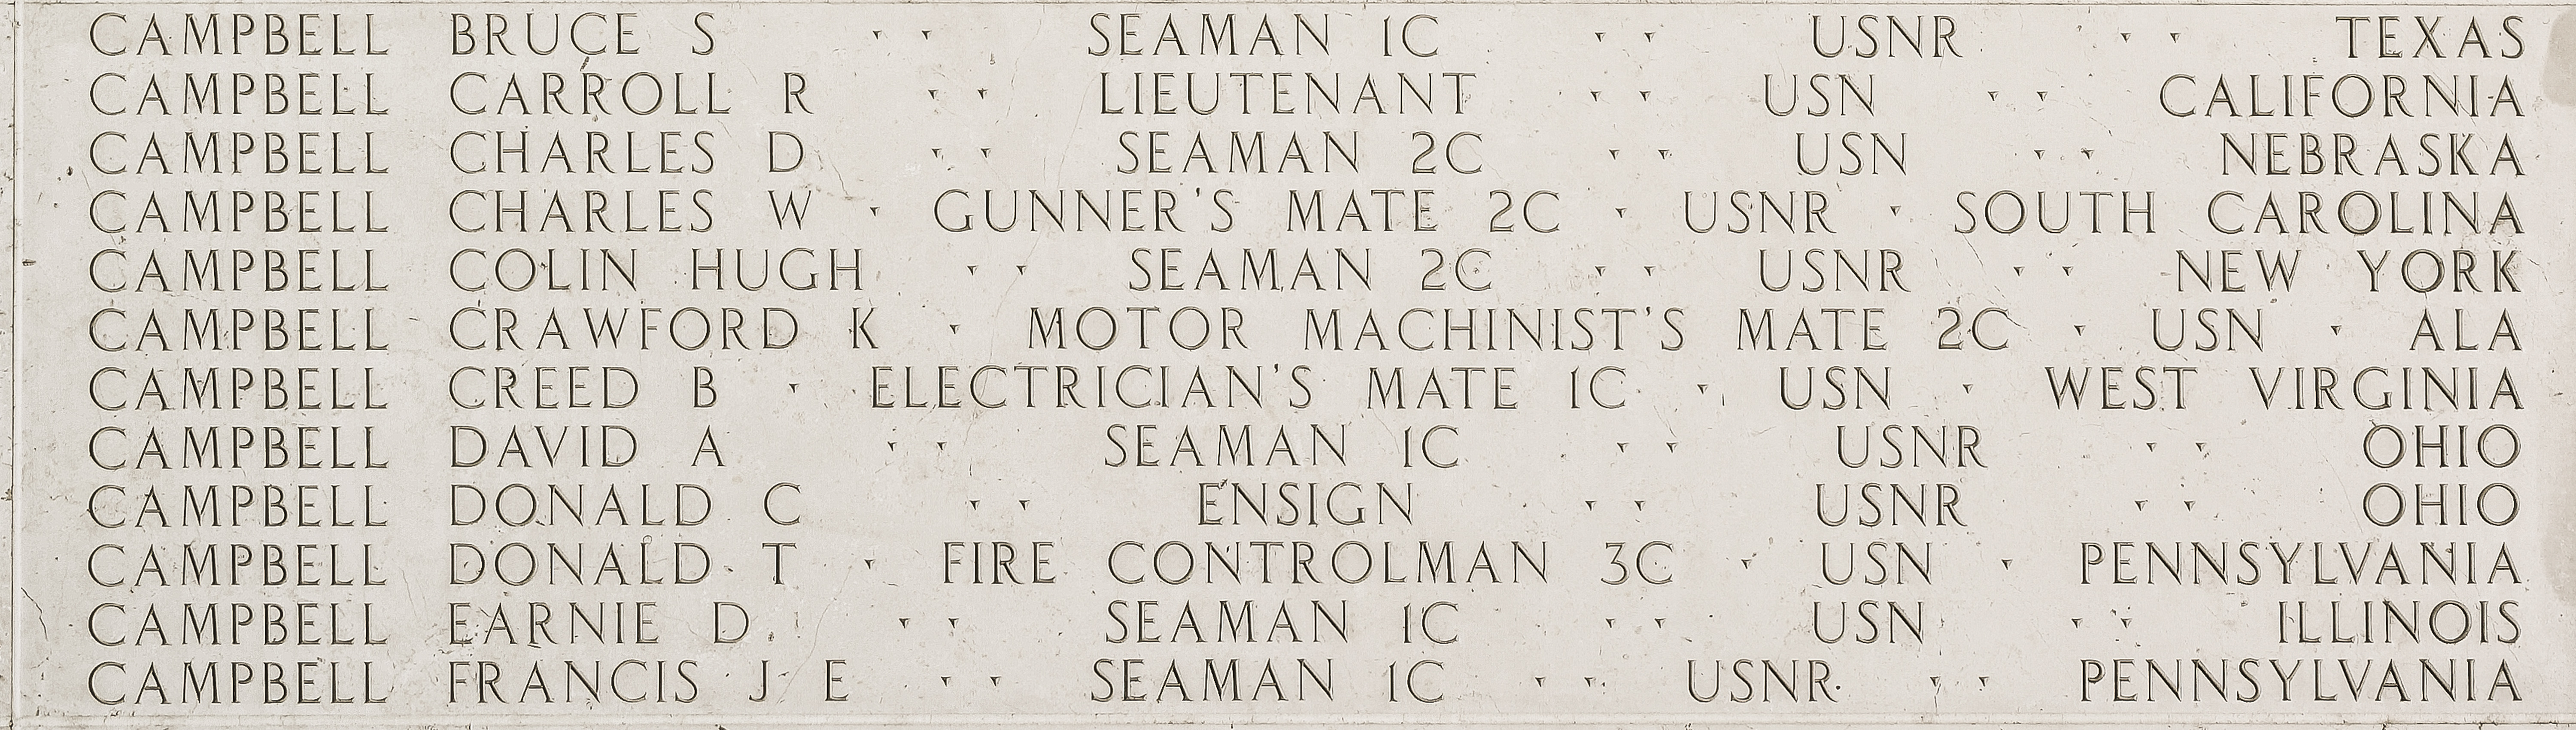 Bruce S. Campbell, Seaman First Class